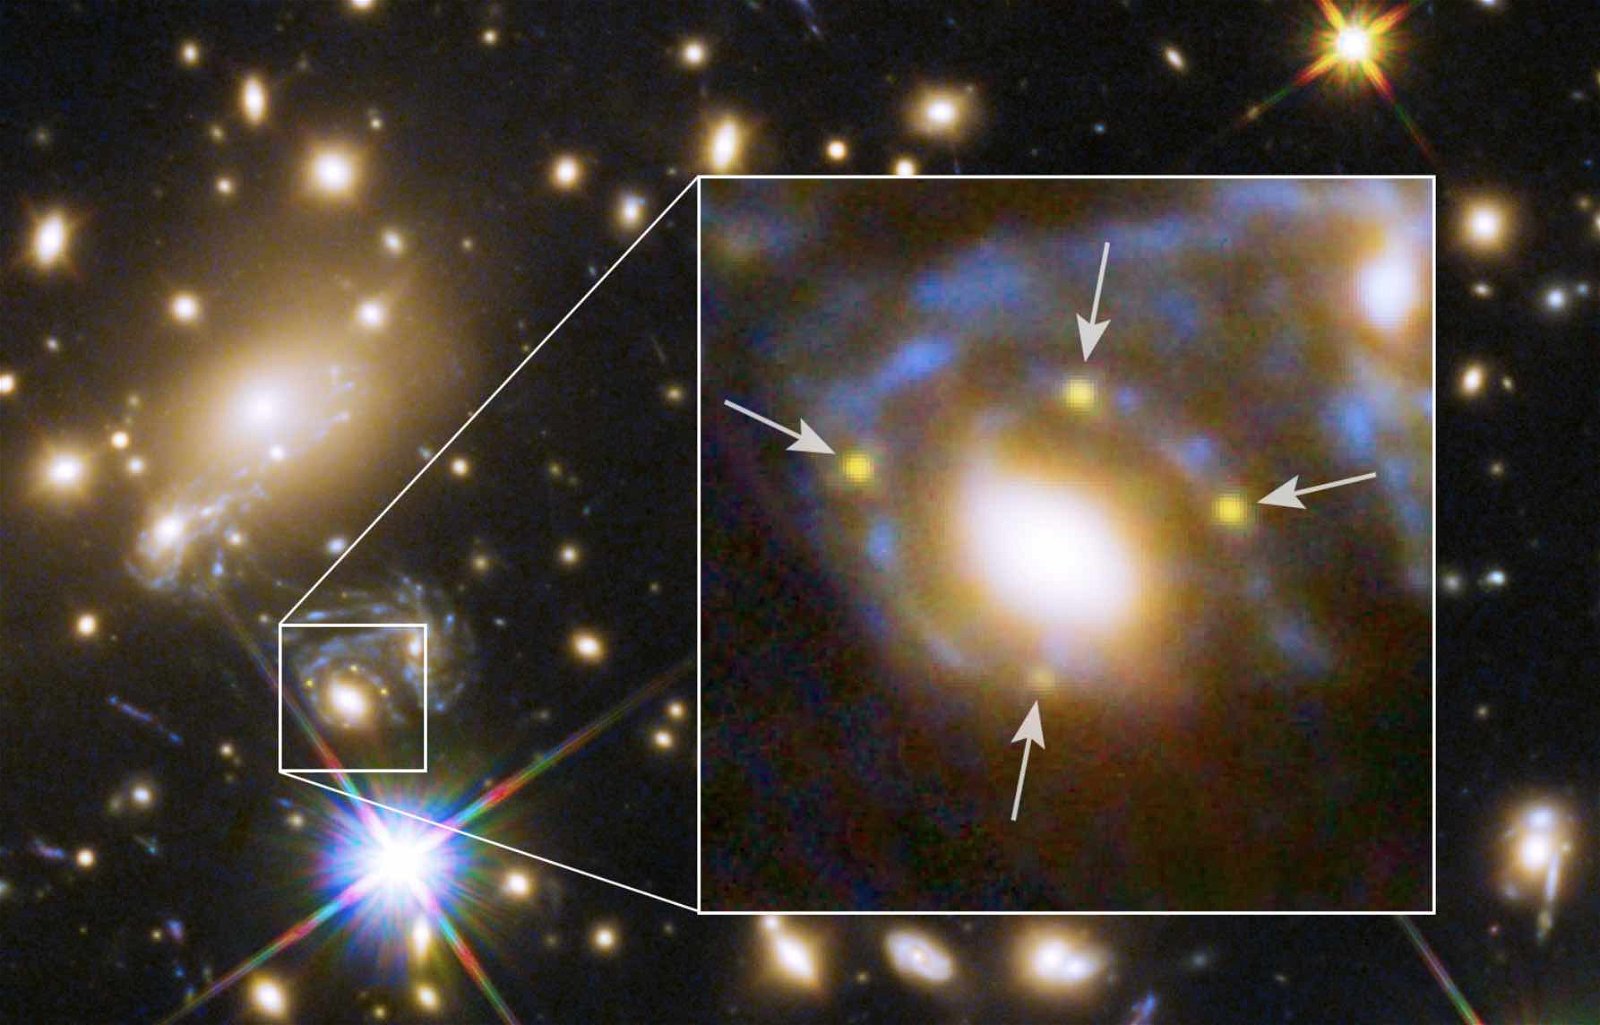 gravitationally lensed supernovae